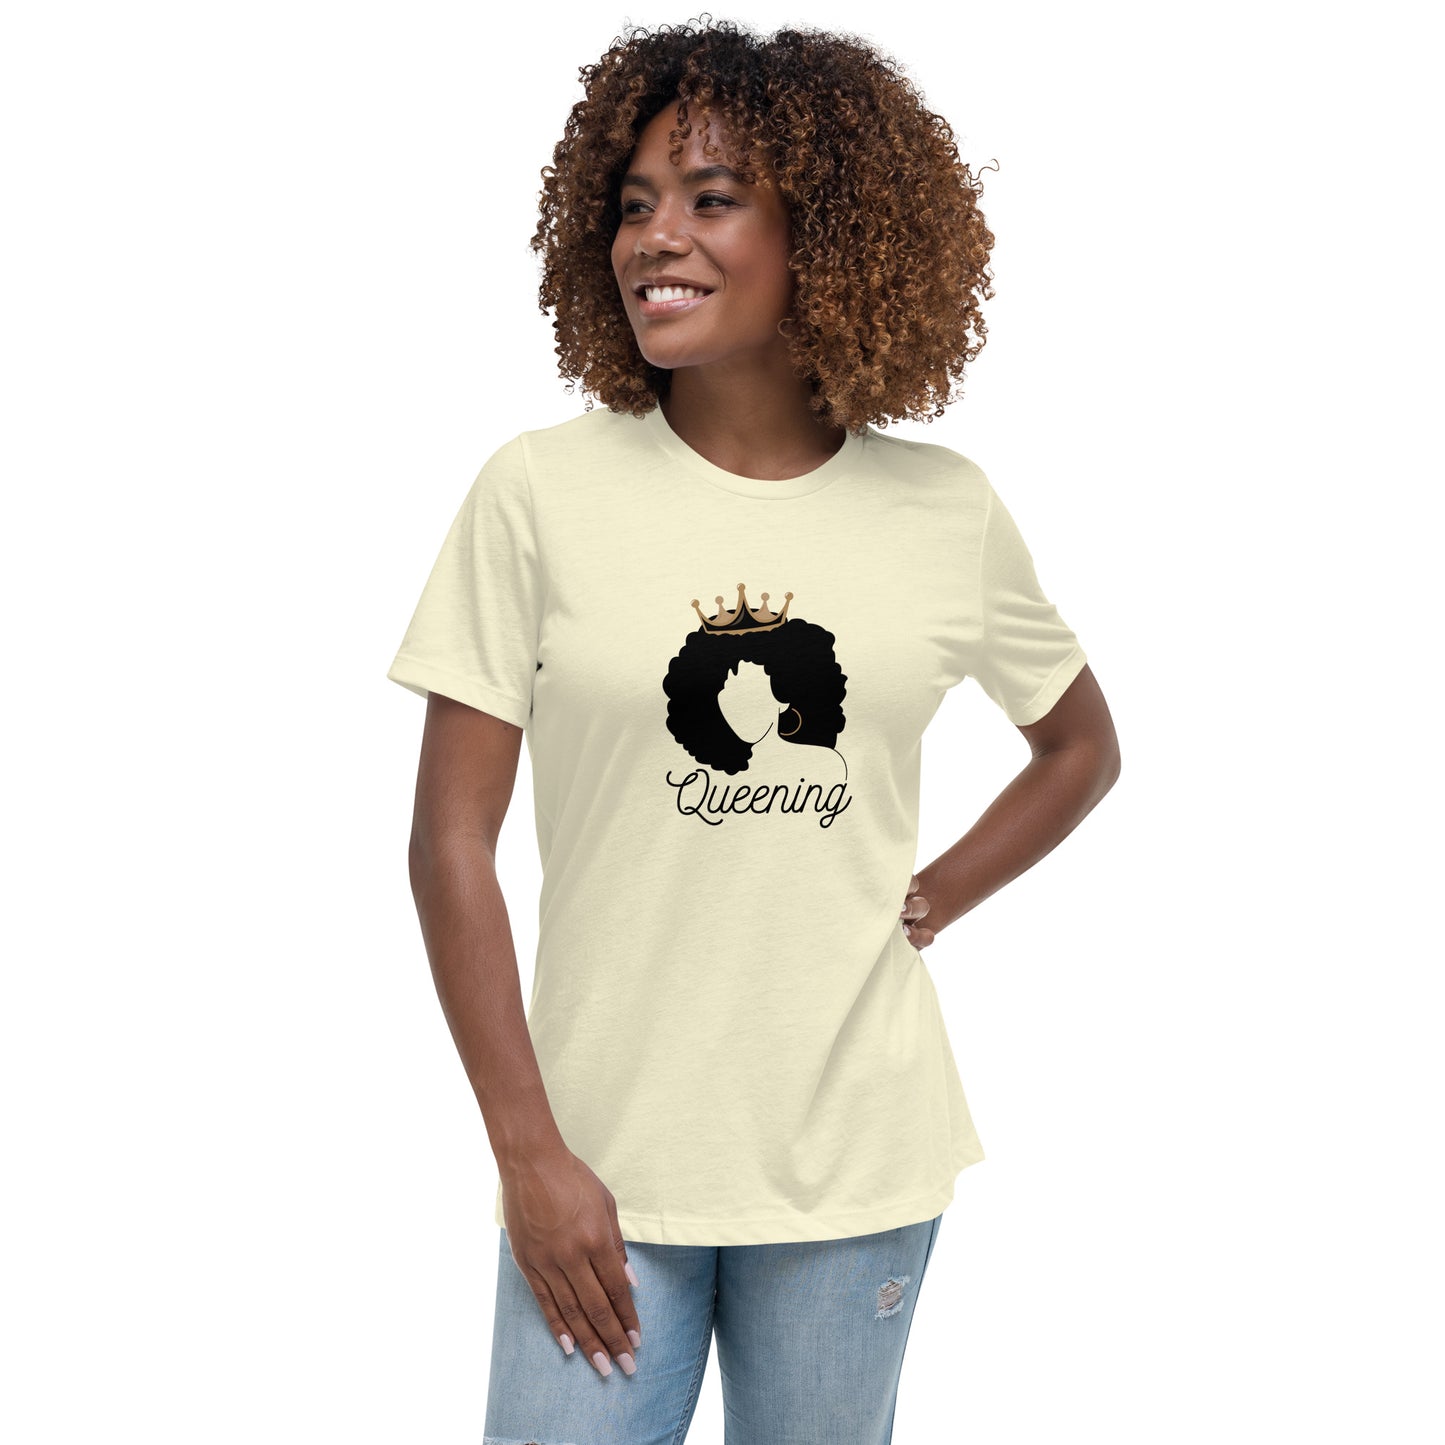 Queening Women's Relaxed T-Shirt